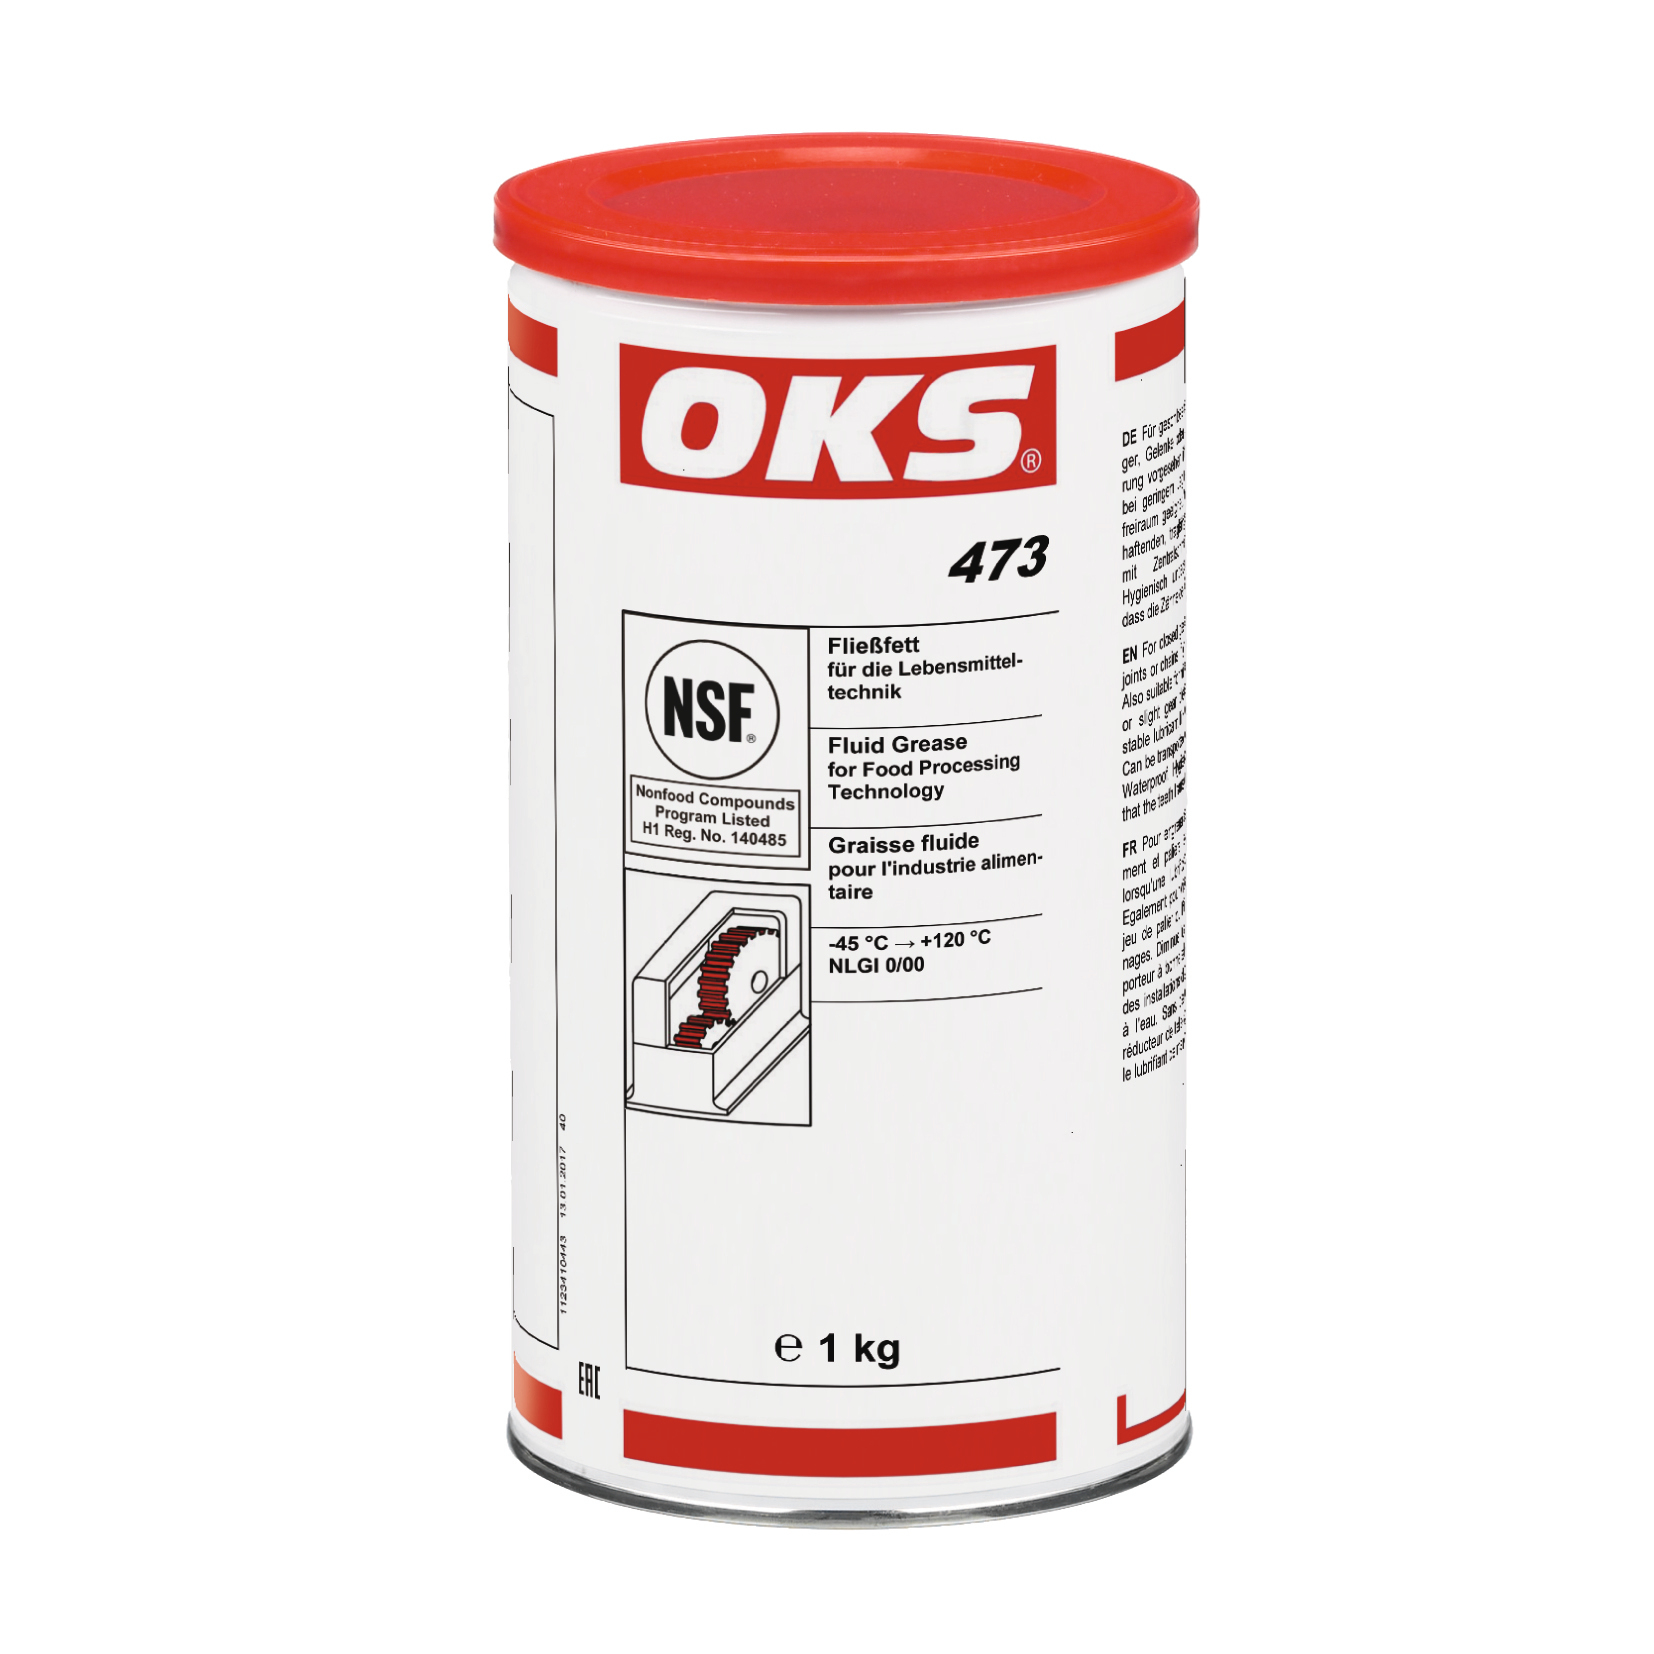 OKS0473-1 OKS 473 is een vloeibaar vet voor gesloten tandwieloverbrengingen, rol- en glijlagers en voor draaibare verbindingen of kettingen, wanneer vetsmering is voorzien.